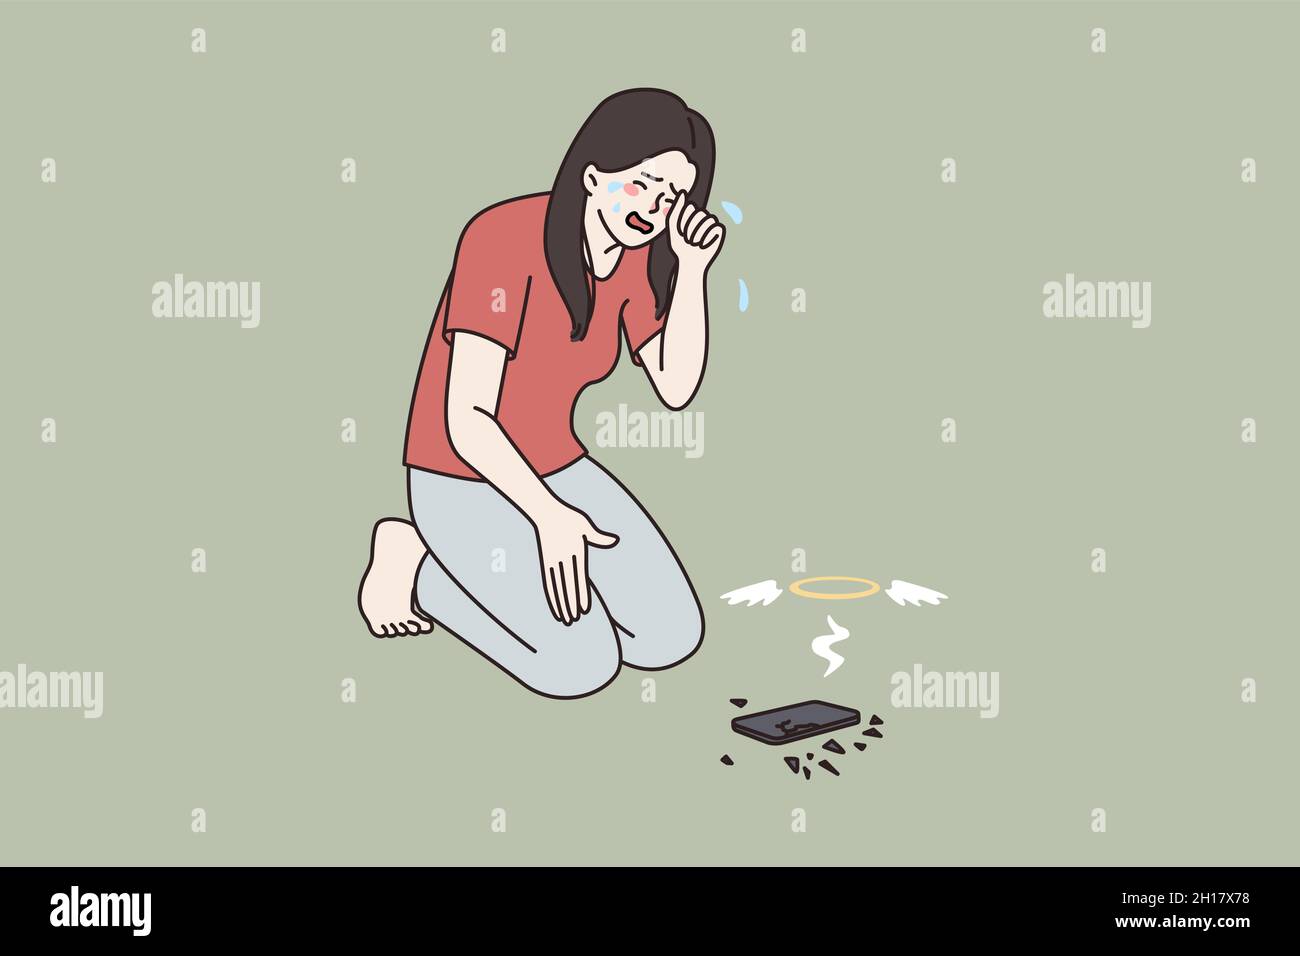 Verärgert Mädchen weinen über gebrochene moderne Smartphone-Gadget. Unglücklich verzweifelte Frau fühlen hysterische Verzweiflung gestresst mit Handy-Bruch. Abhängigkeit von Technologiegeräten. Flache Vektorgrafik. Stock Vektor